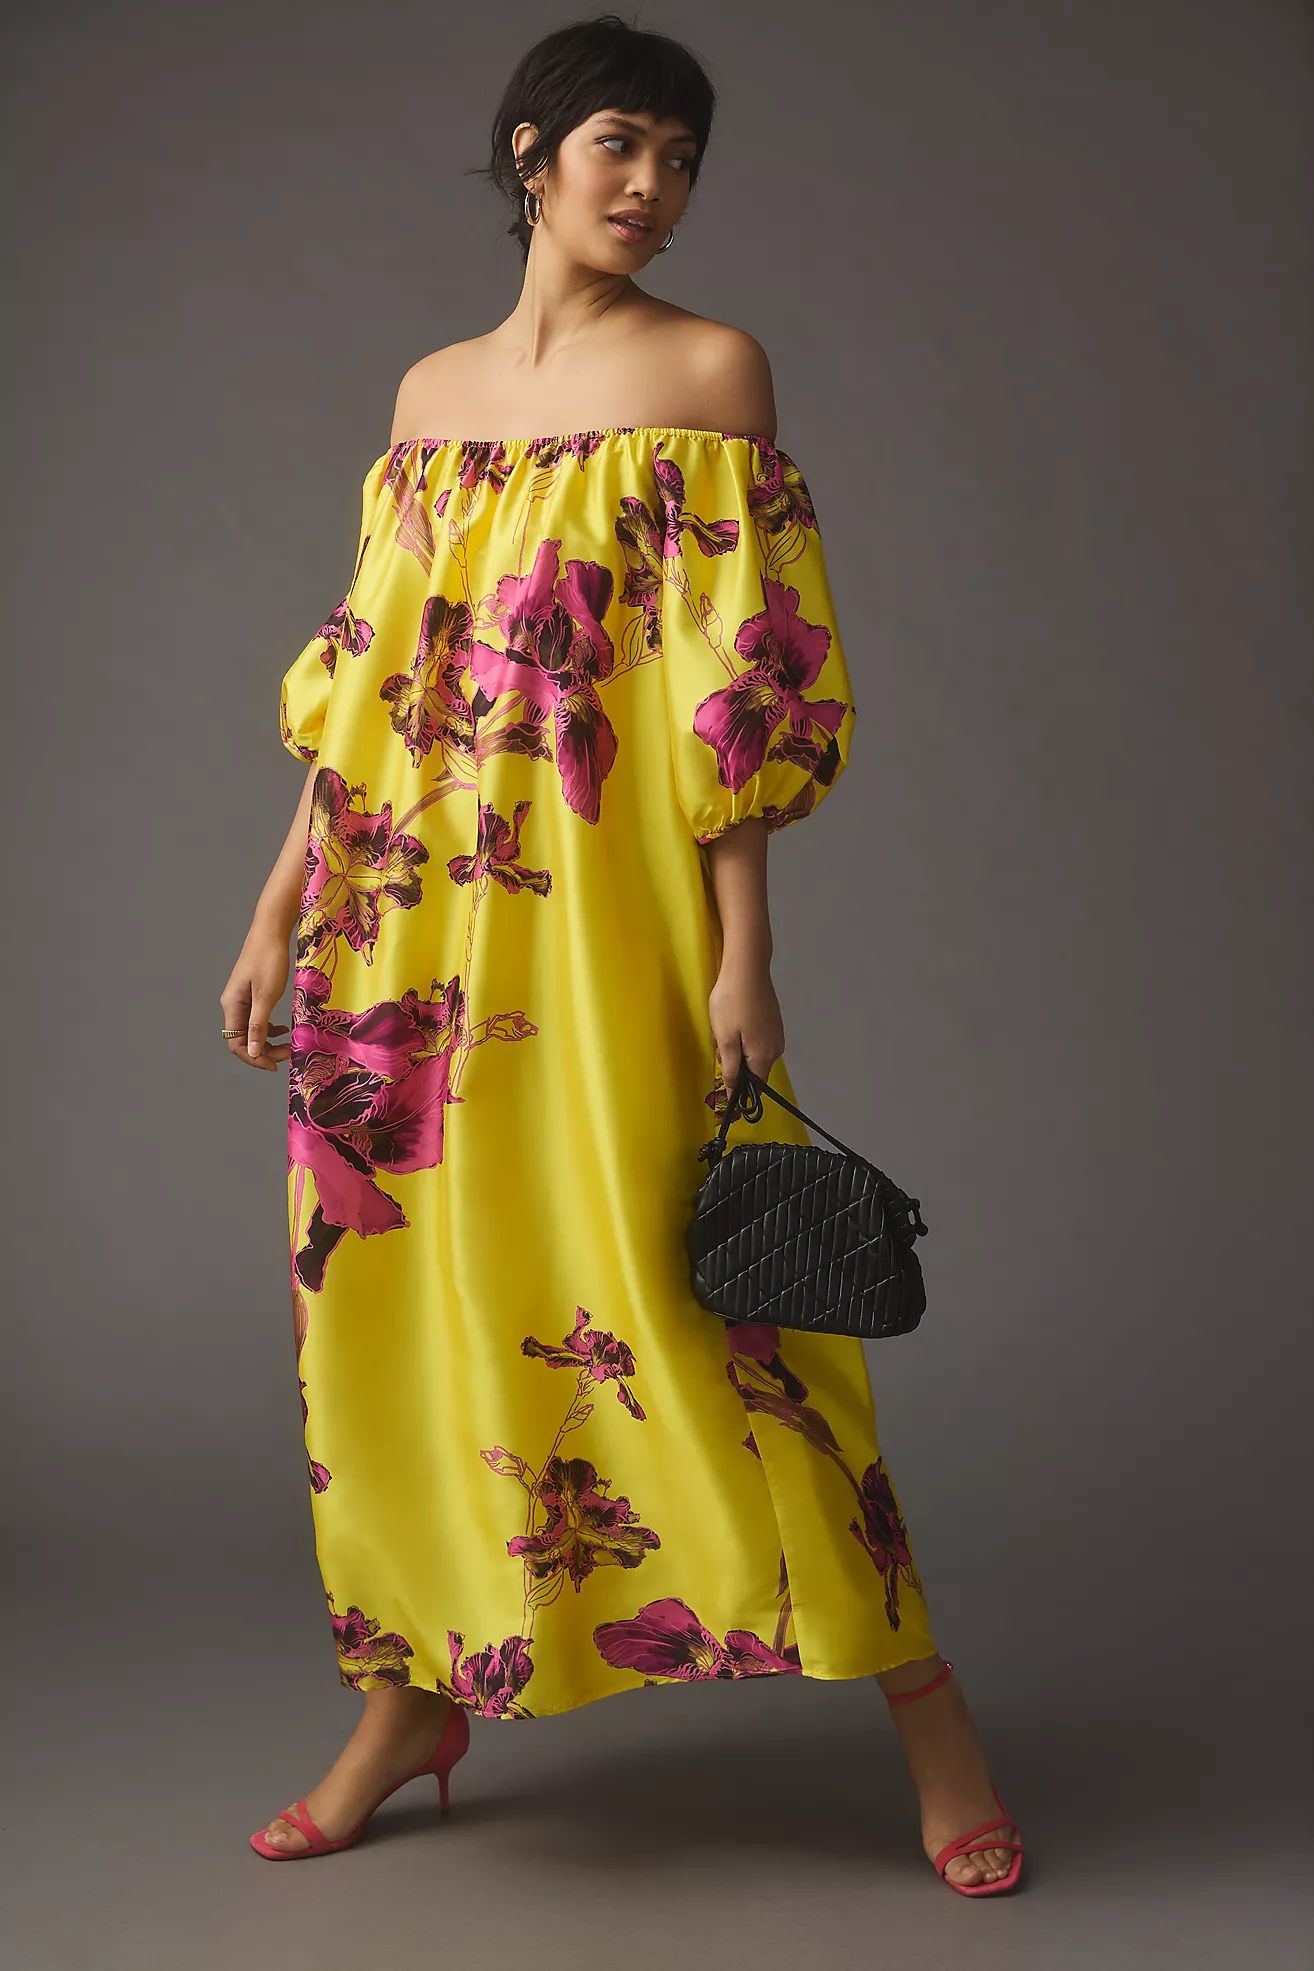 Atsu Off-The-Shoulder Floral Dress | Anthropologie (US)